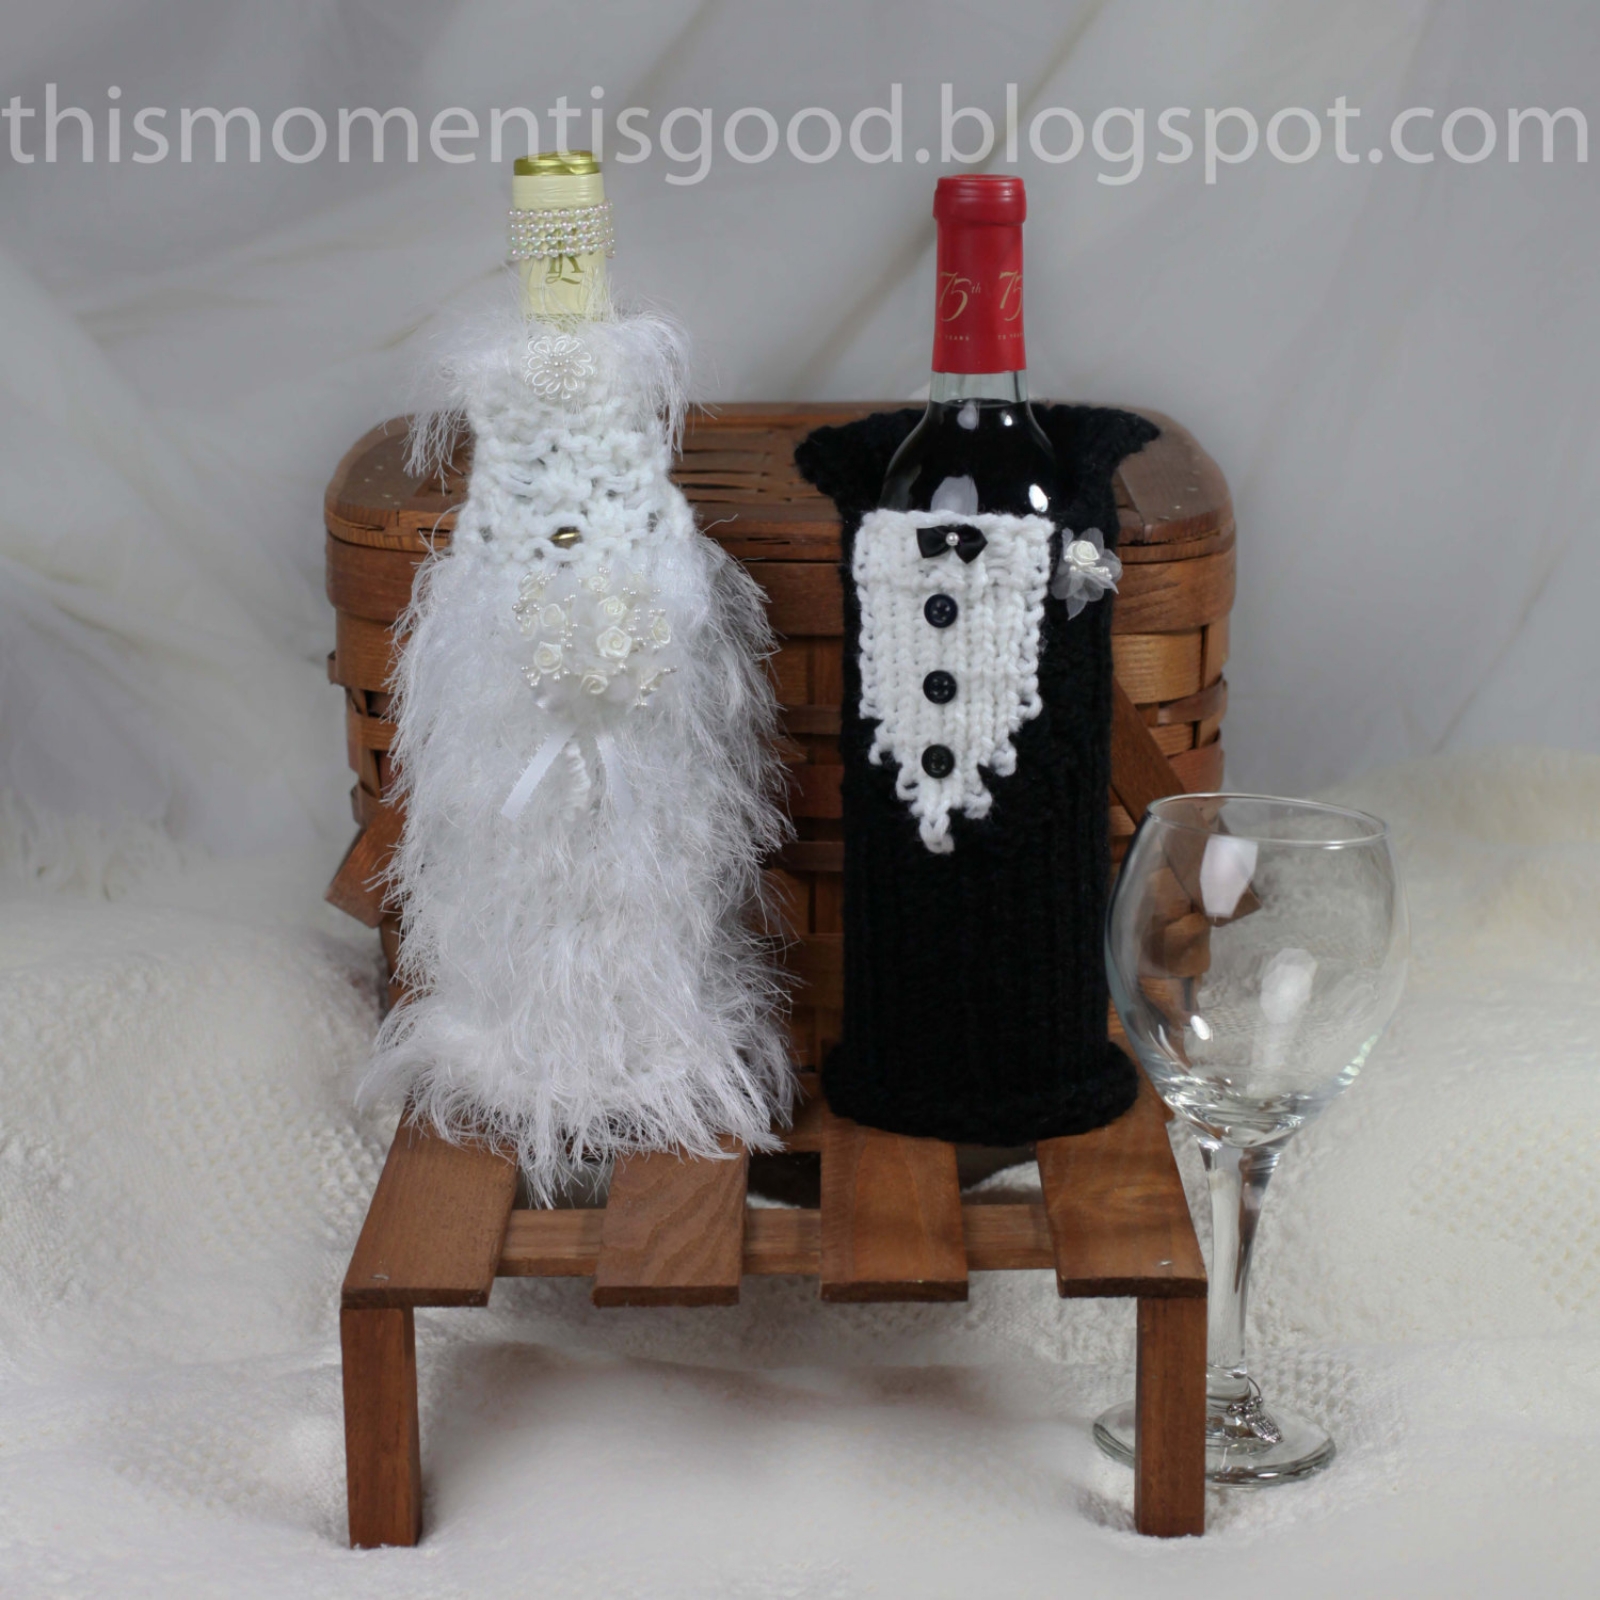 Loom Knit Wine Bottle Cover Pattern Bride Groom 2 Patterns